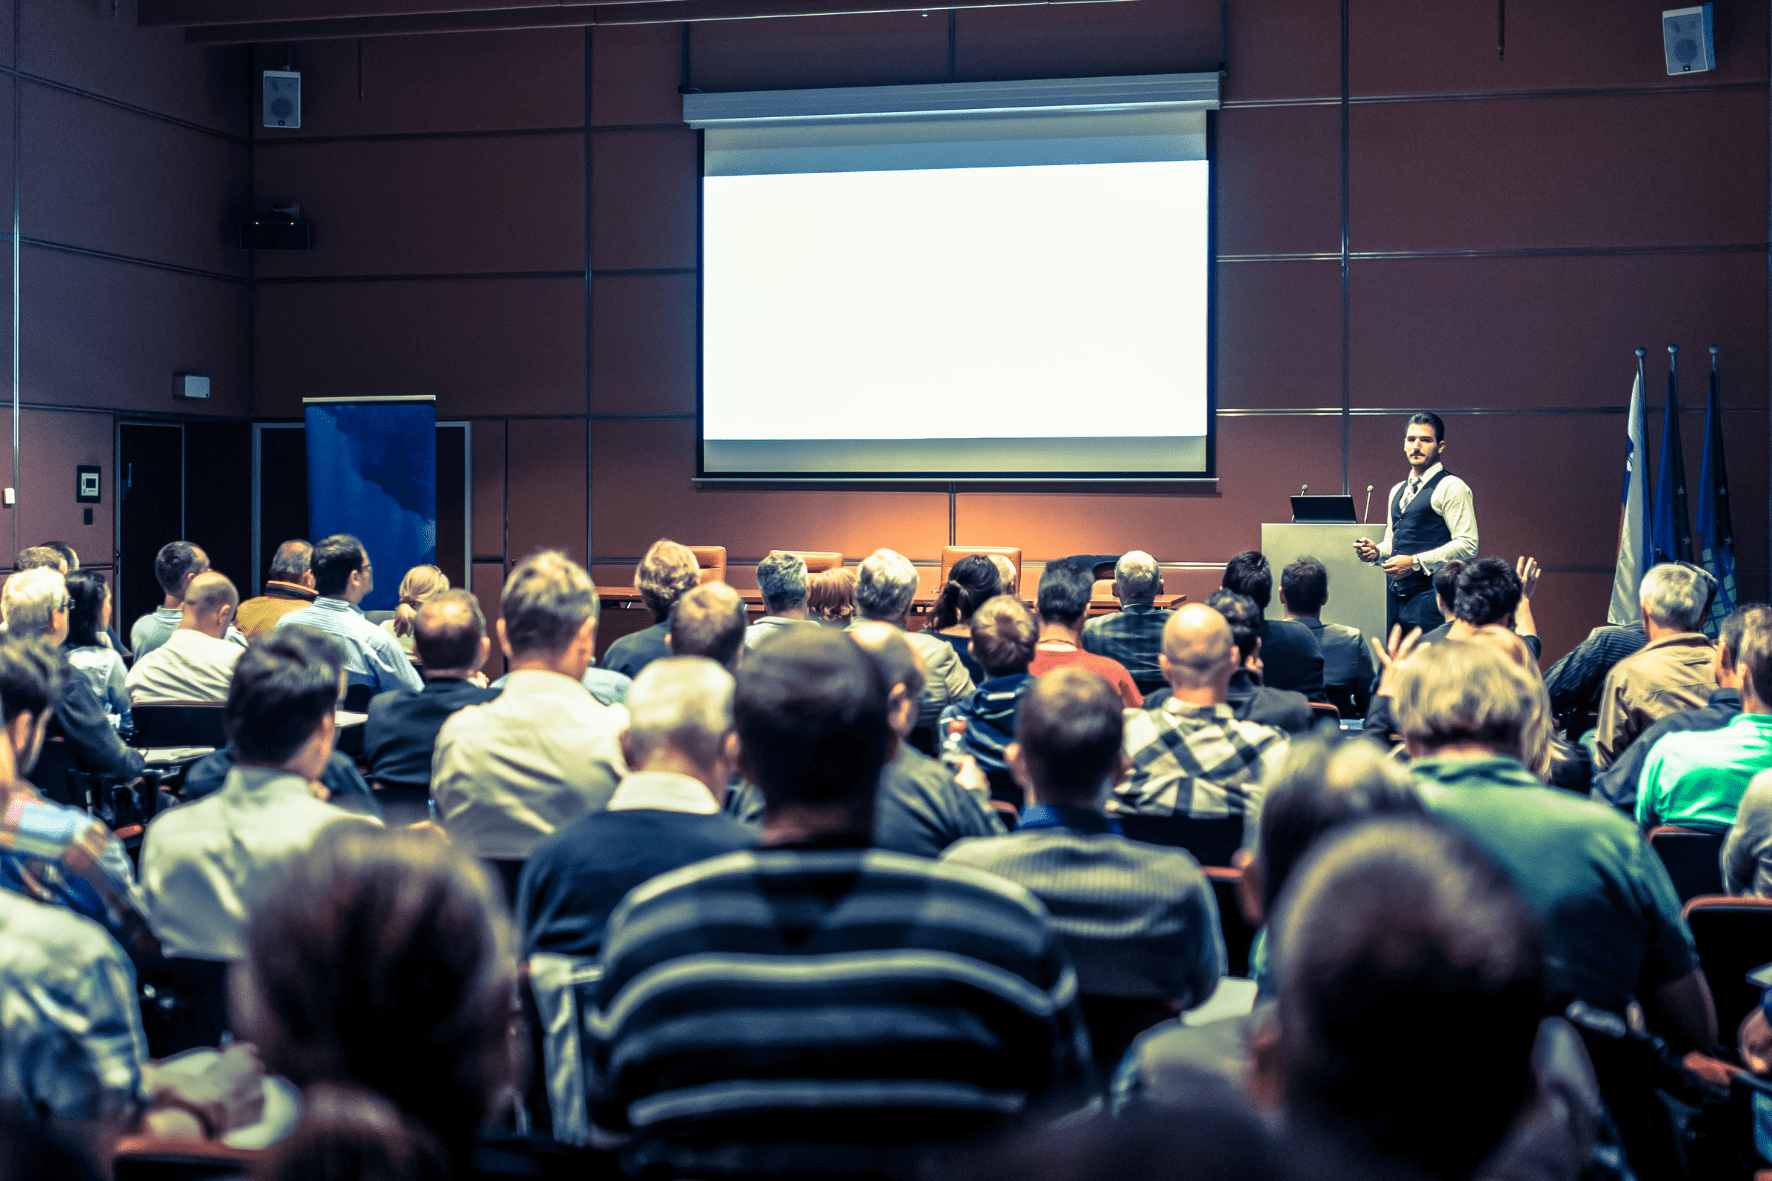 Oral presentation in auditorium